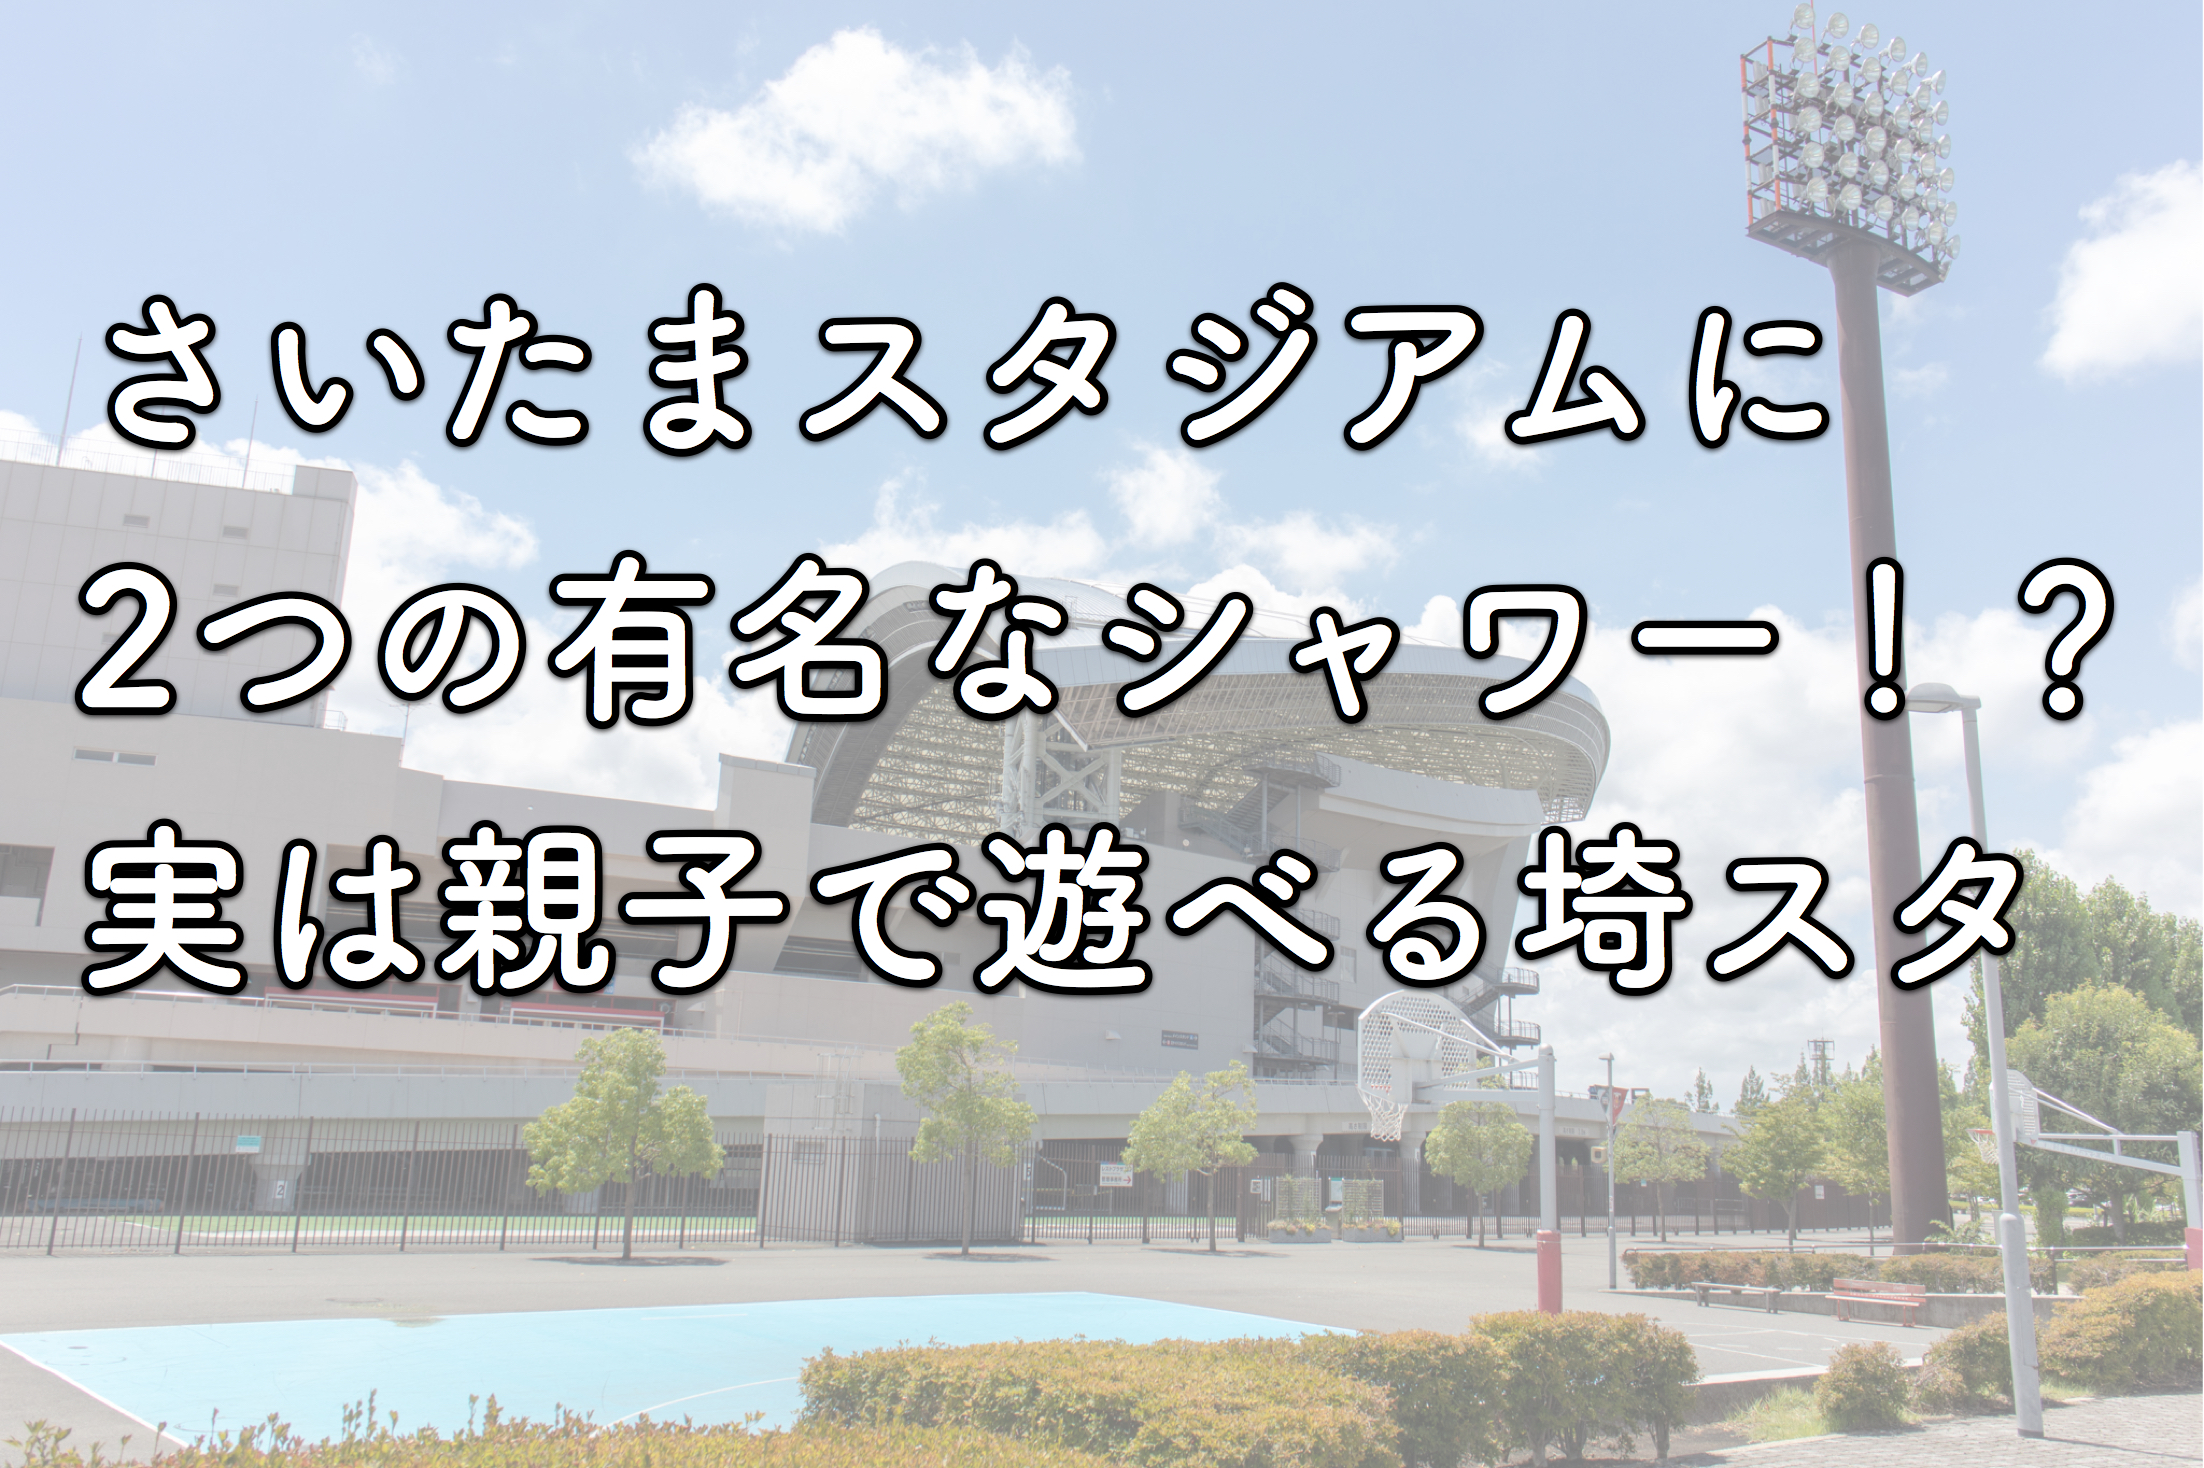 埼玉スタジアムには有名な2つの シャワー がある 子供も大喜びなその正体とは